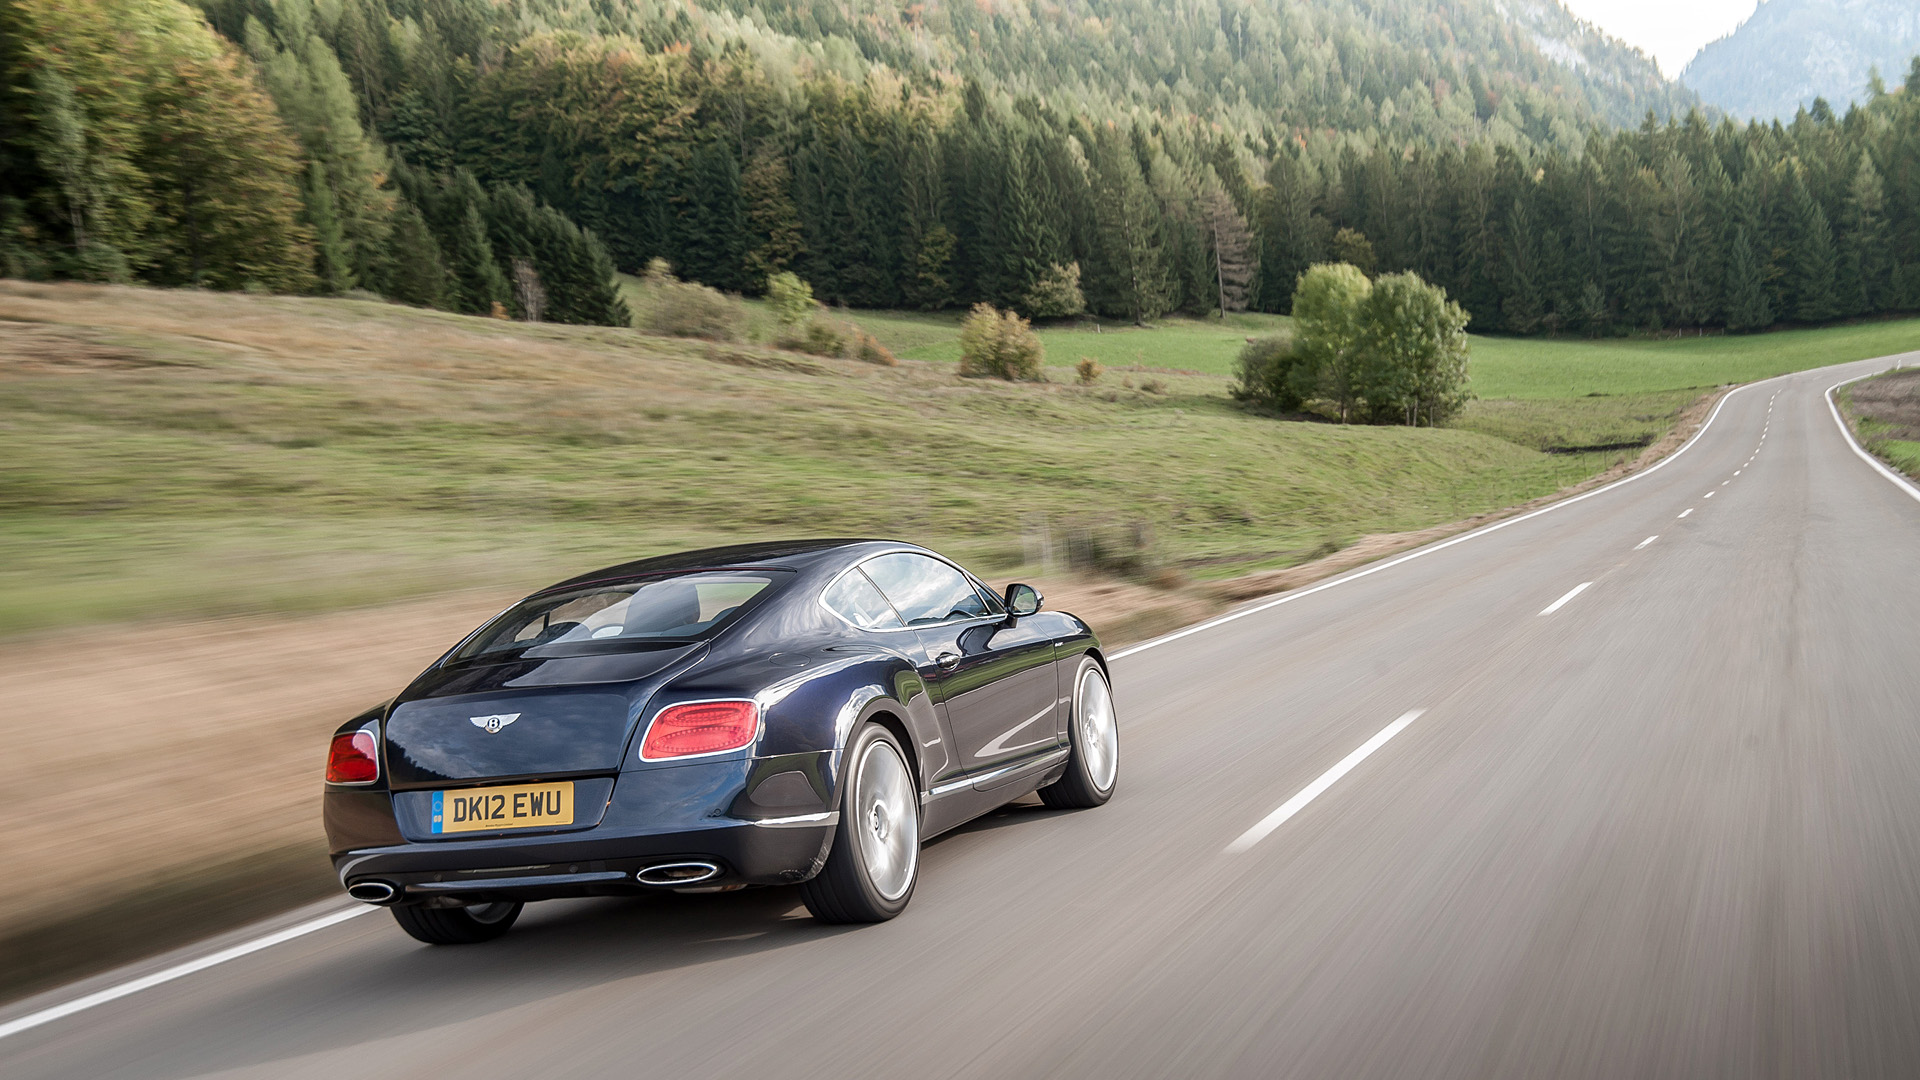  2012 Bentley Continental GT Speed Wallpaper.